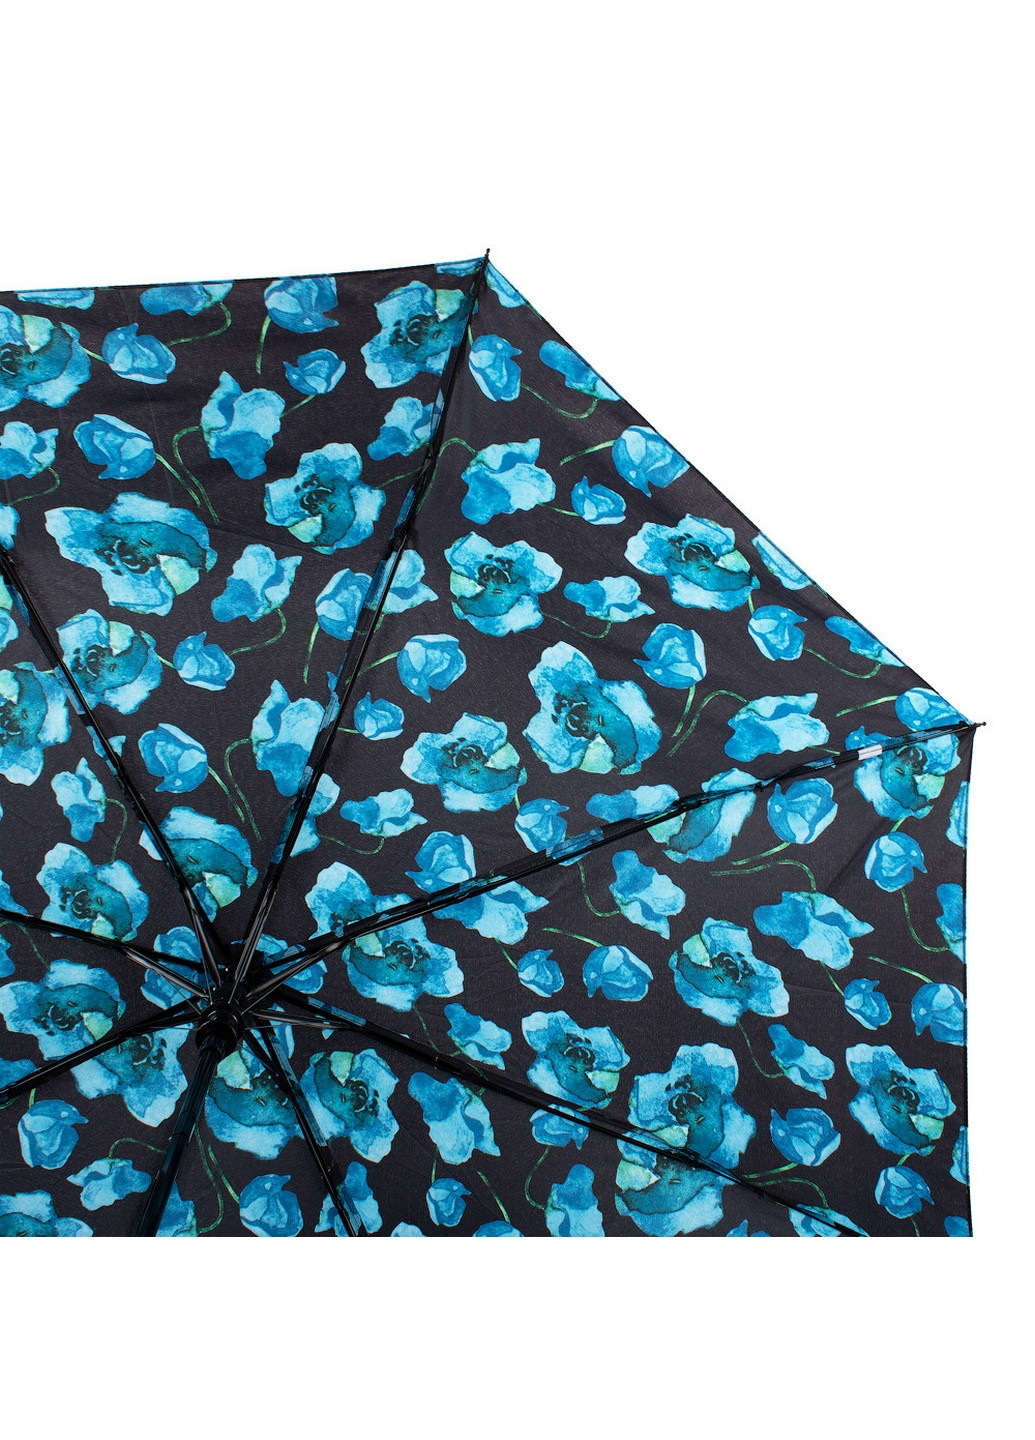 Женский складной зонт полуавтомат 88 см Happy Rain (260330294)